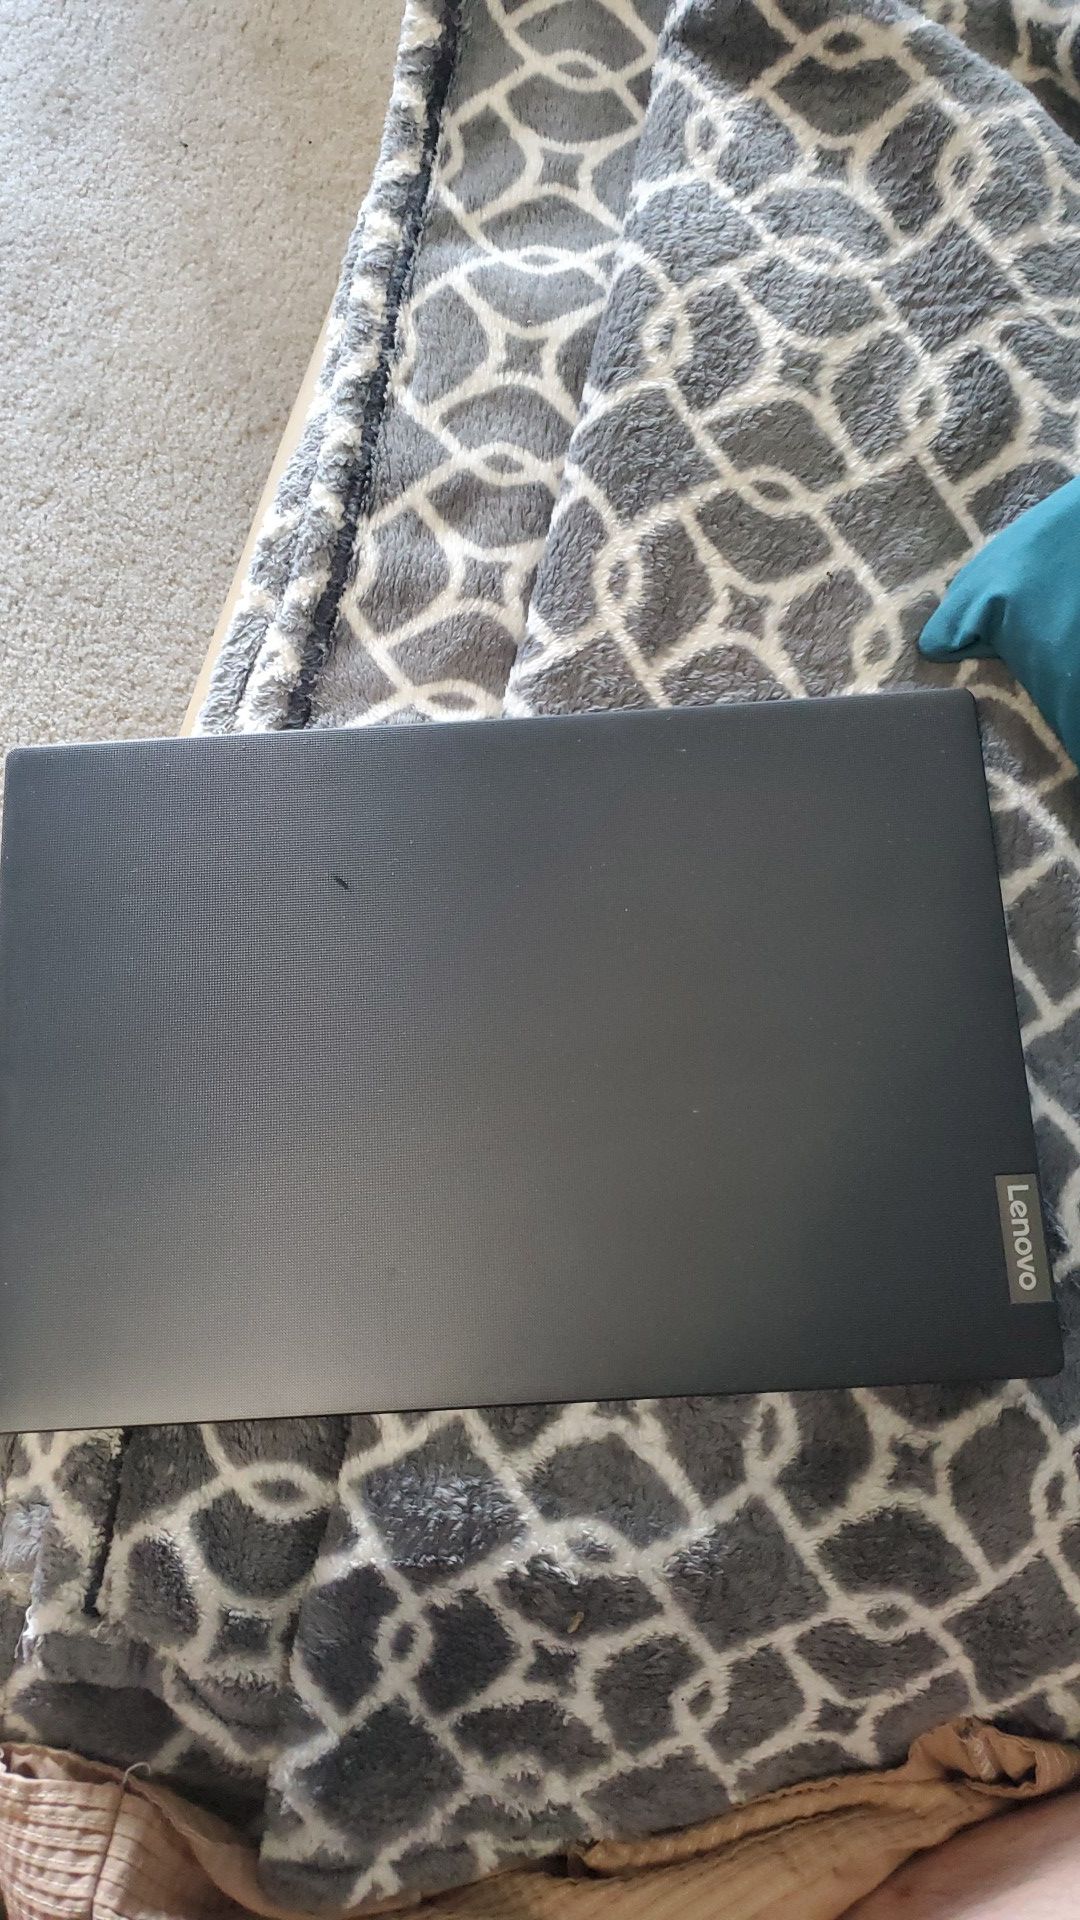 Lenovo IdeaPad S145 Laptop